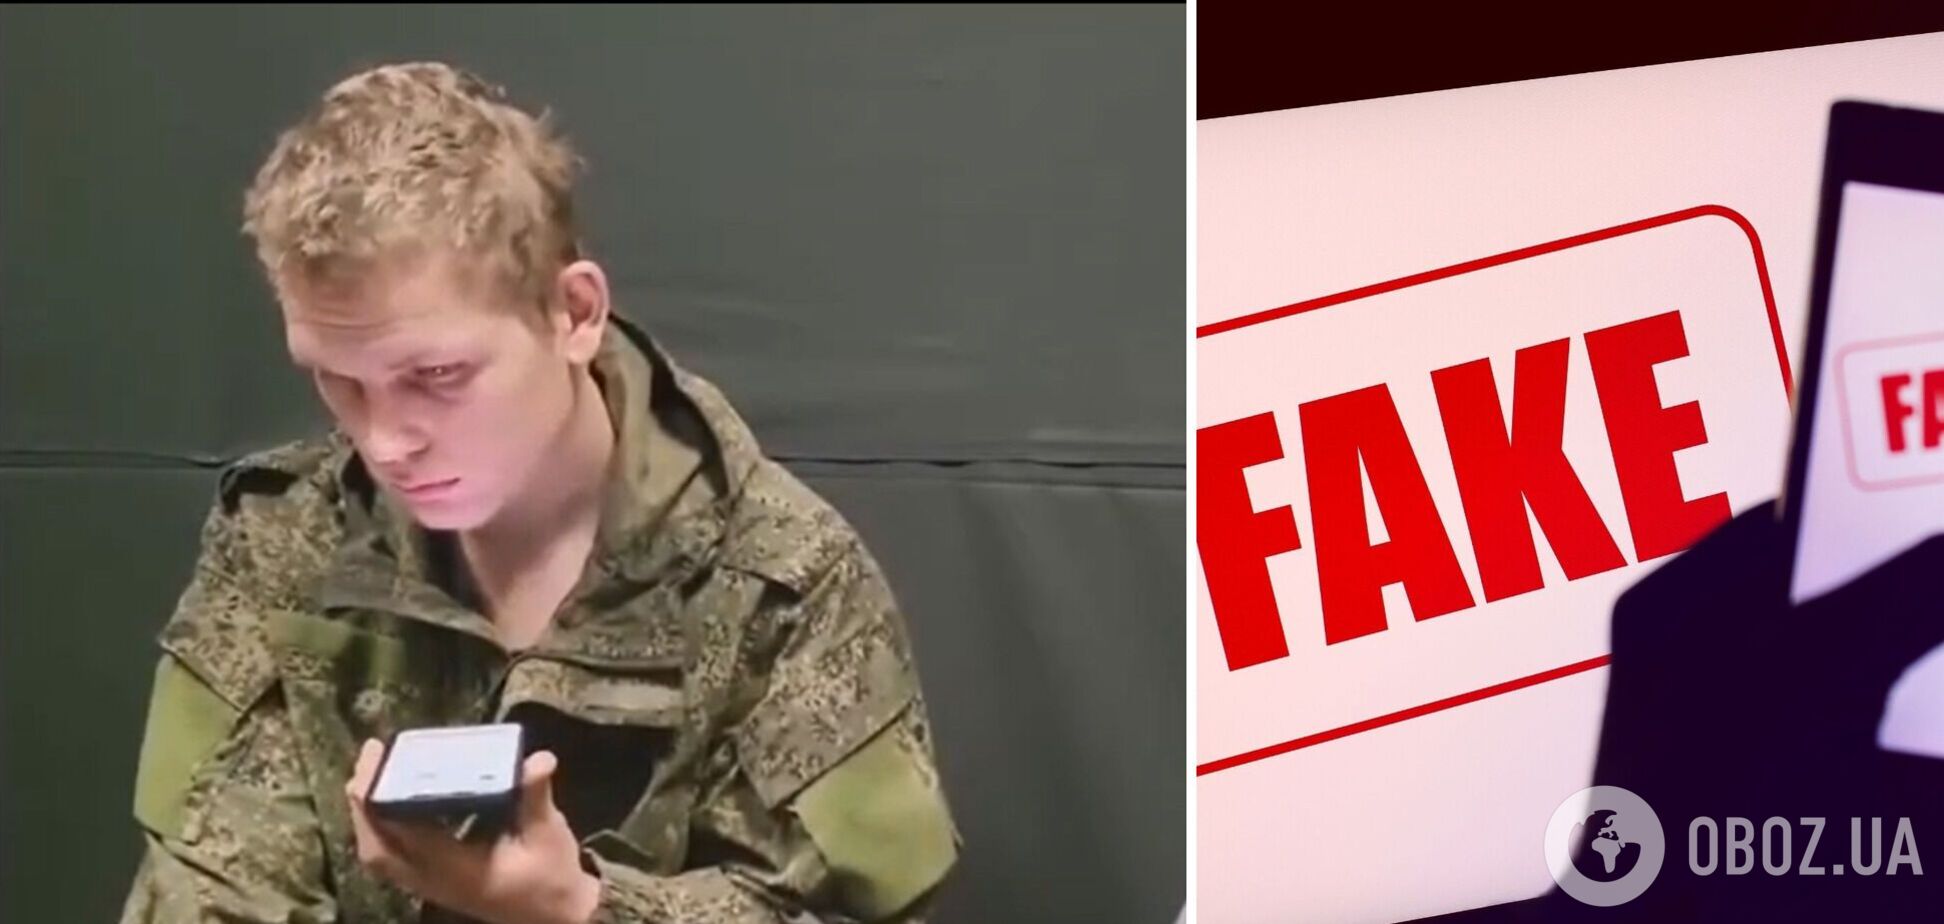 НАТО, коронавирус и нападение на Россию: мама пленного оккупанта отчитала сына, который просил о помощи. Видео